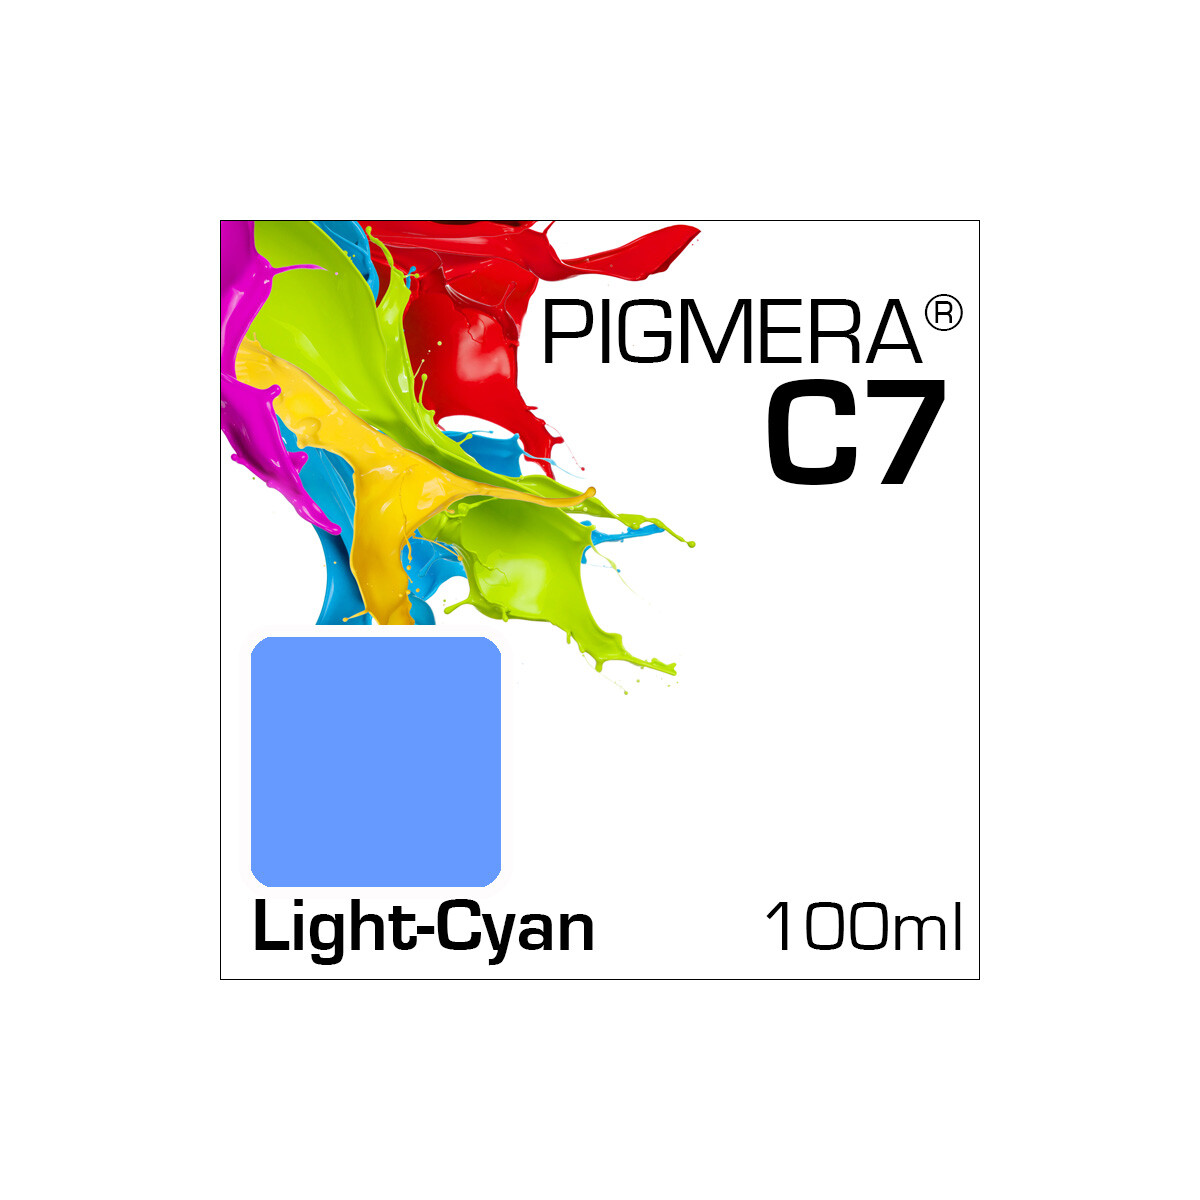 Pigmera C7 Flasche 100ml Light-Cyan (Abverkauf)